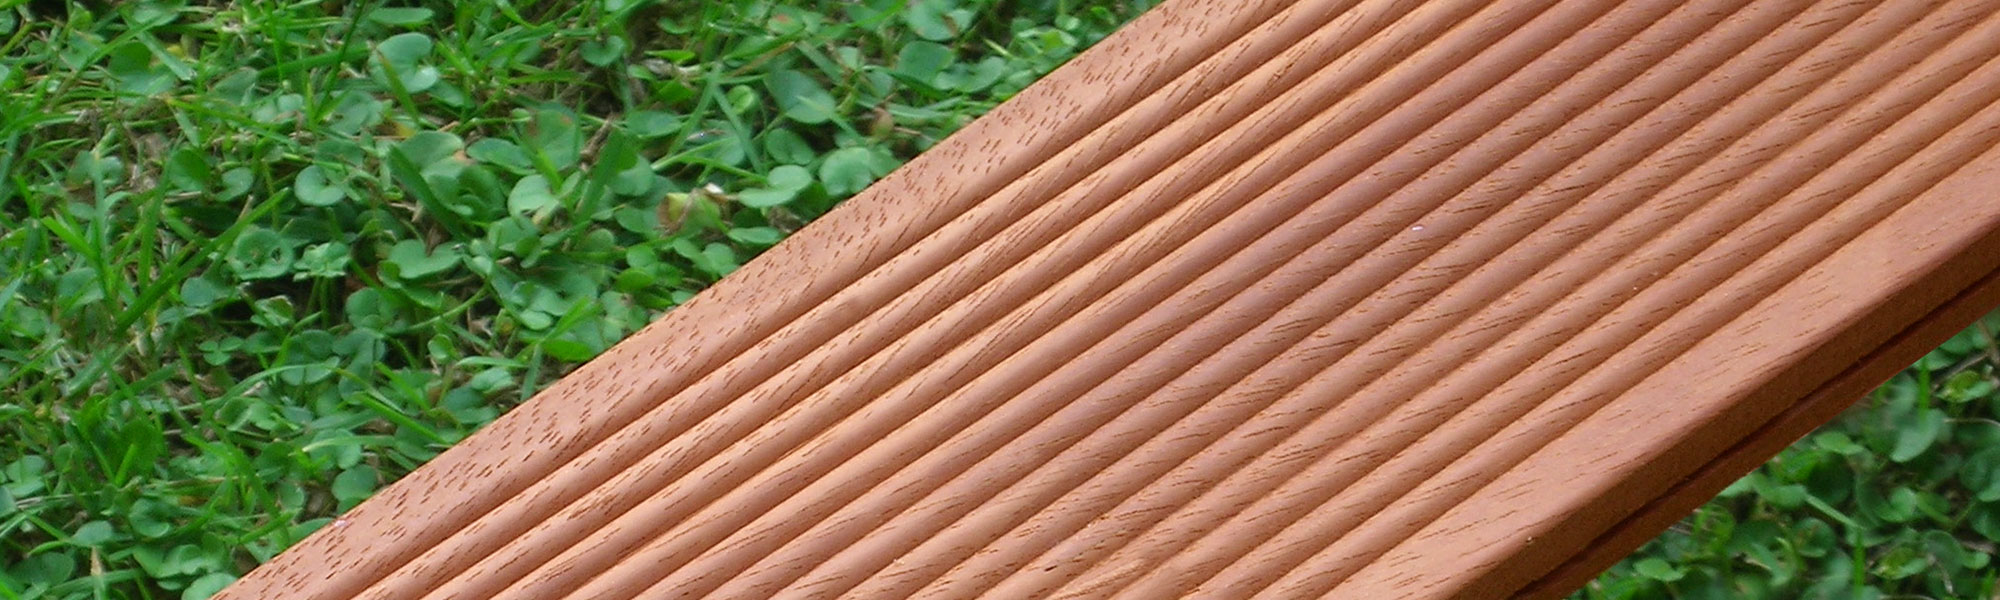 Listone in legno per decking